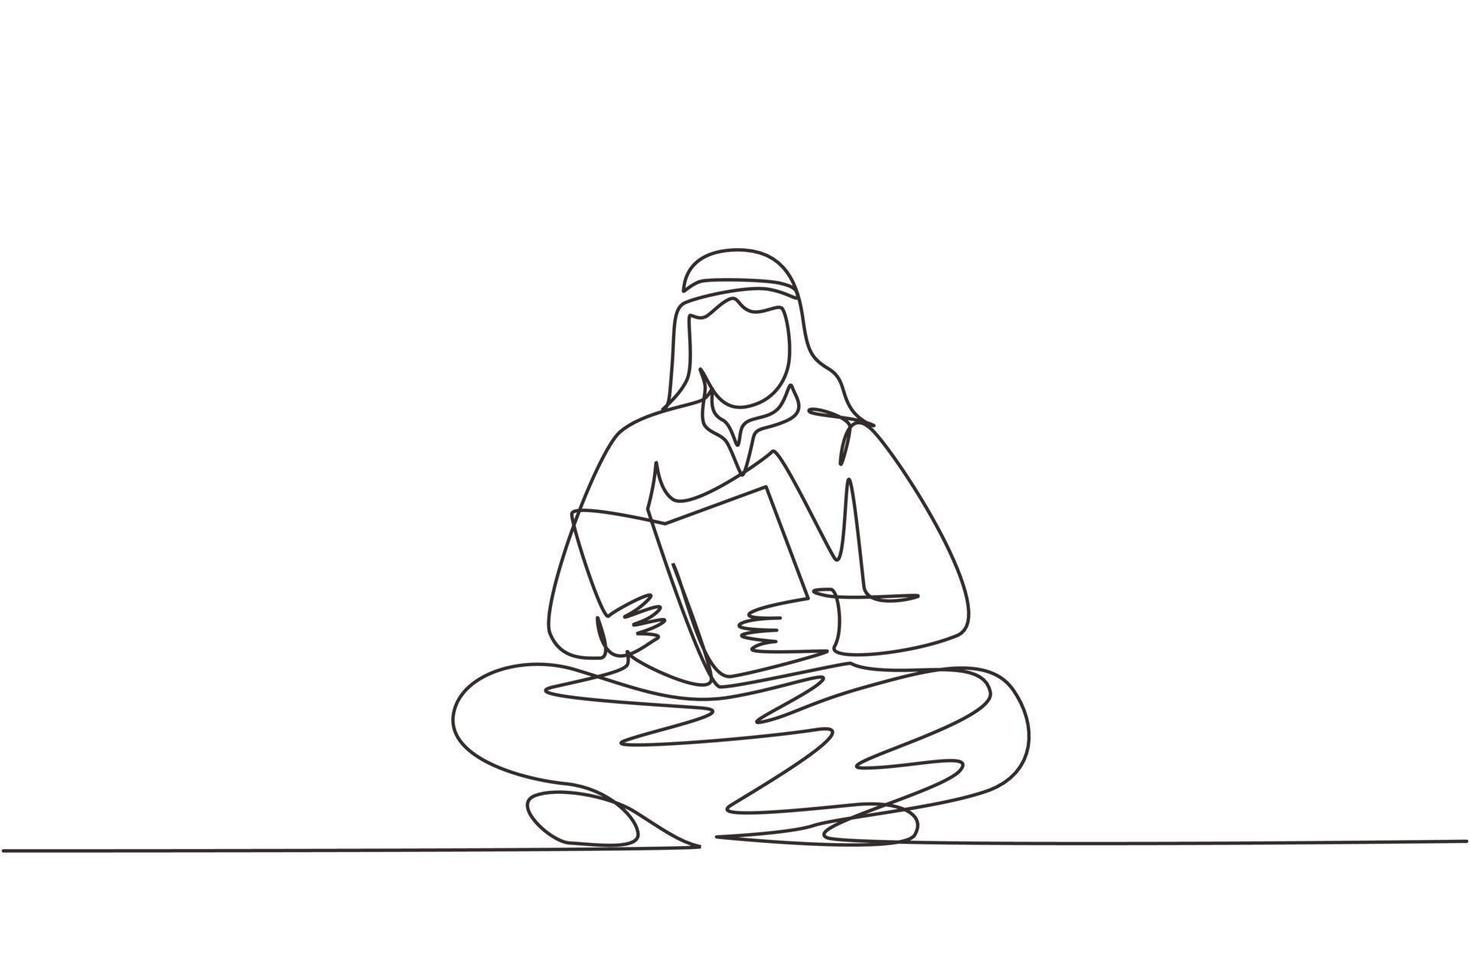 un hombre árabe de dibujo continuo está sentado en el suelo leyendo un libro. el estudiante se está preparando para el examen, el solicitante se está preparando para la admisión, el amante de los libros está leyendo. vector de diseño de dibujo de una sola línea